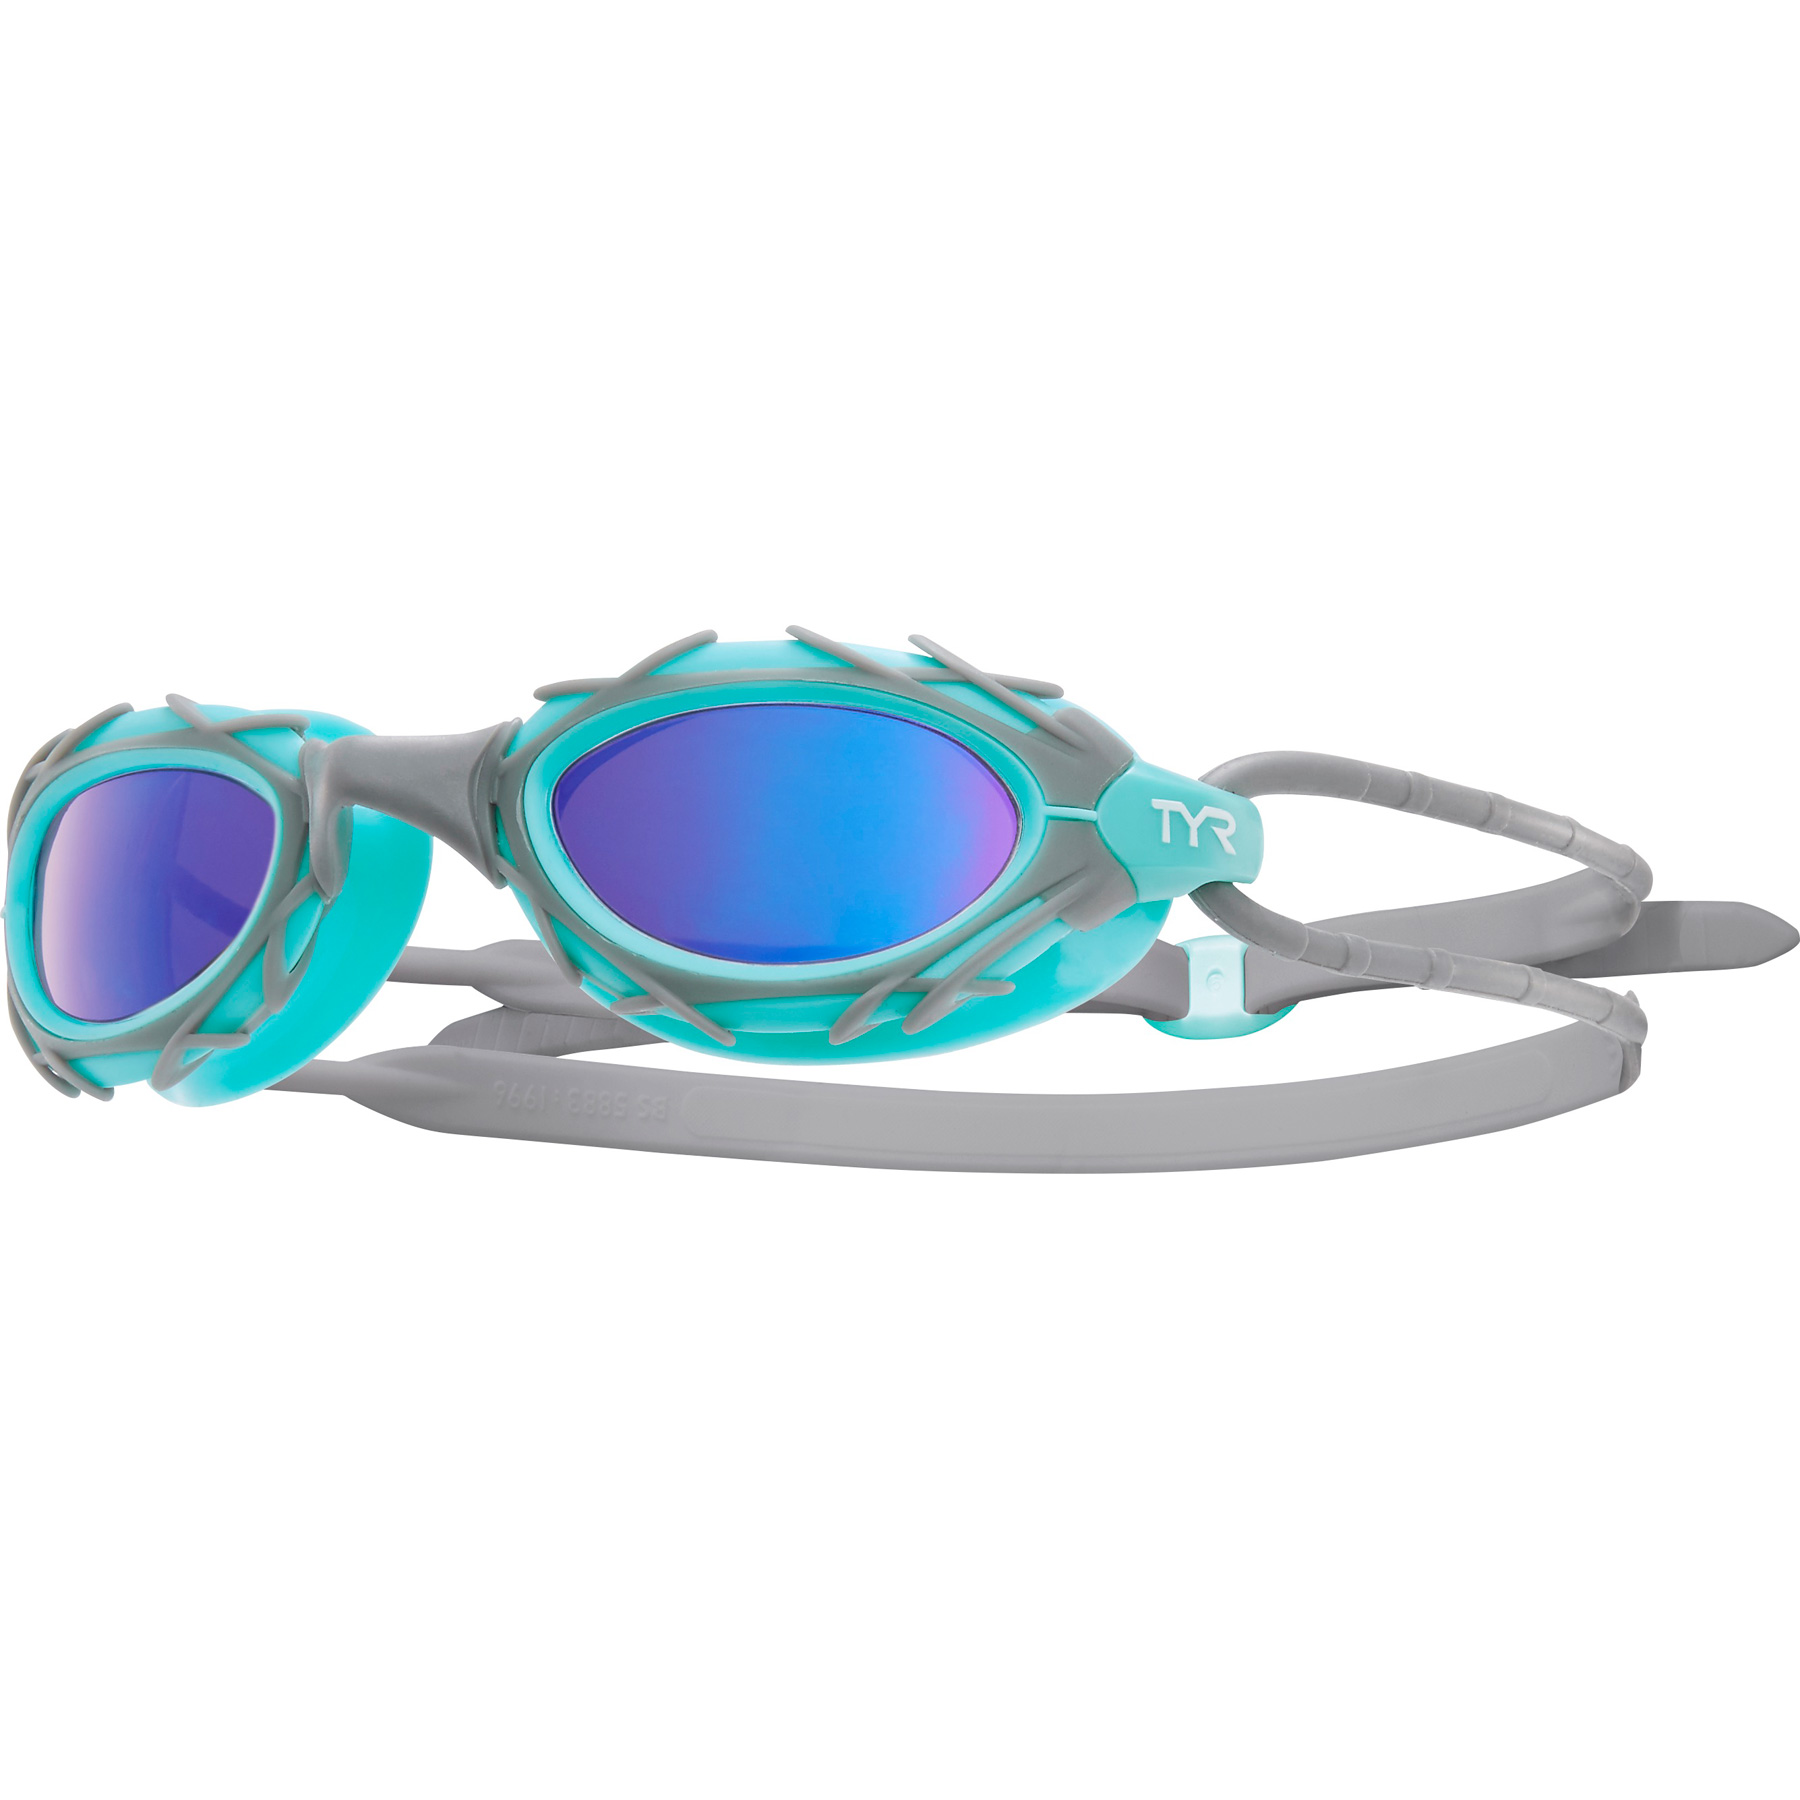 Immagine prodotto da TYR Nest Pro Mirrored Nano Fit Swimming Goggles - blue/grey/mint